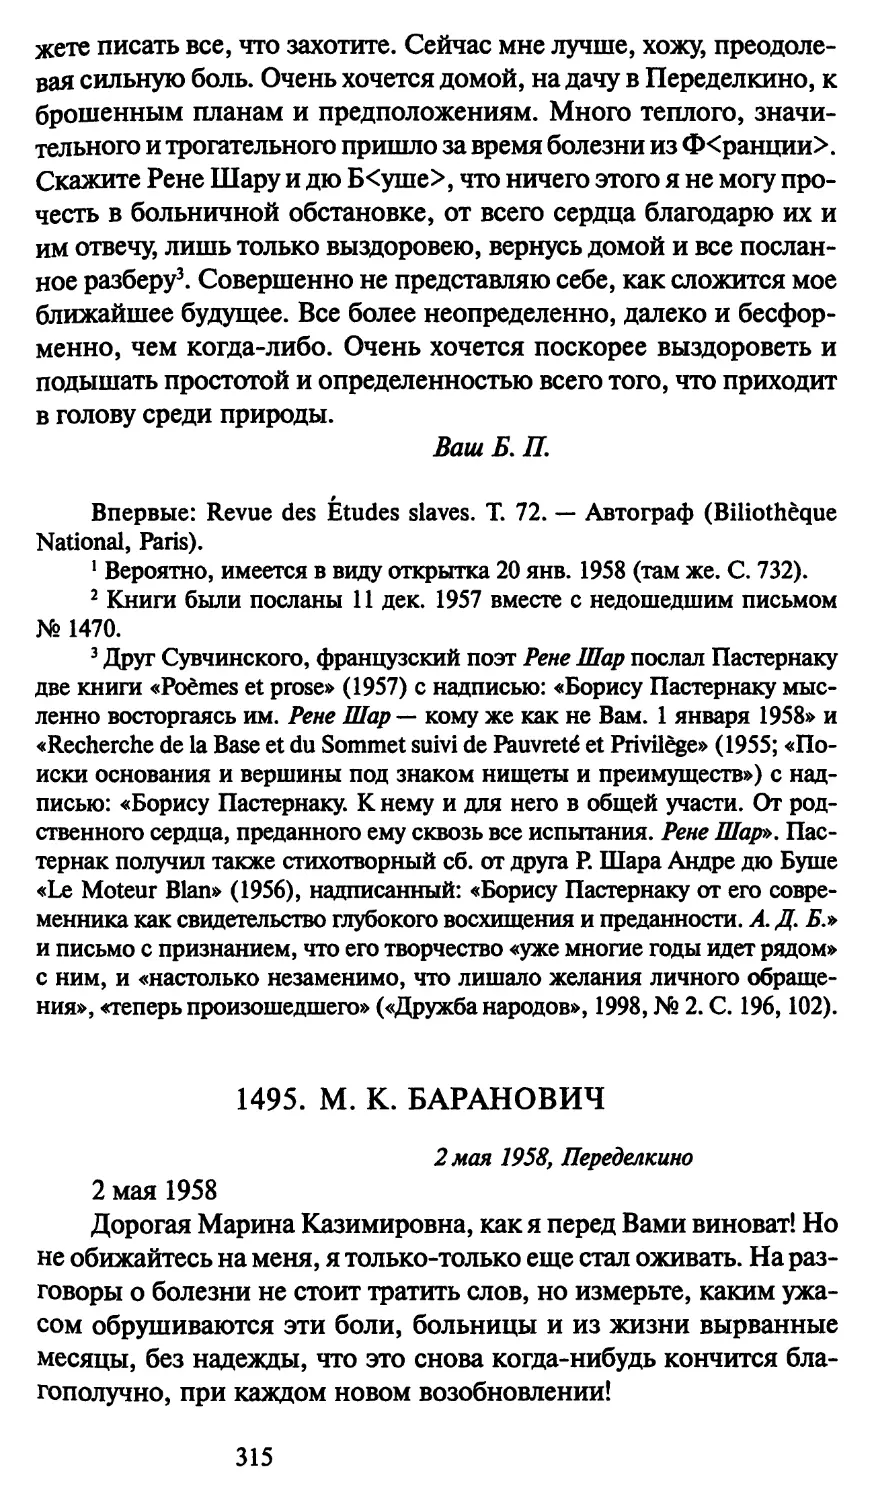 1495. М. К. Баранович 2 мая 1958